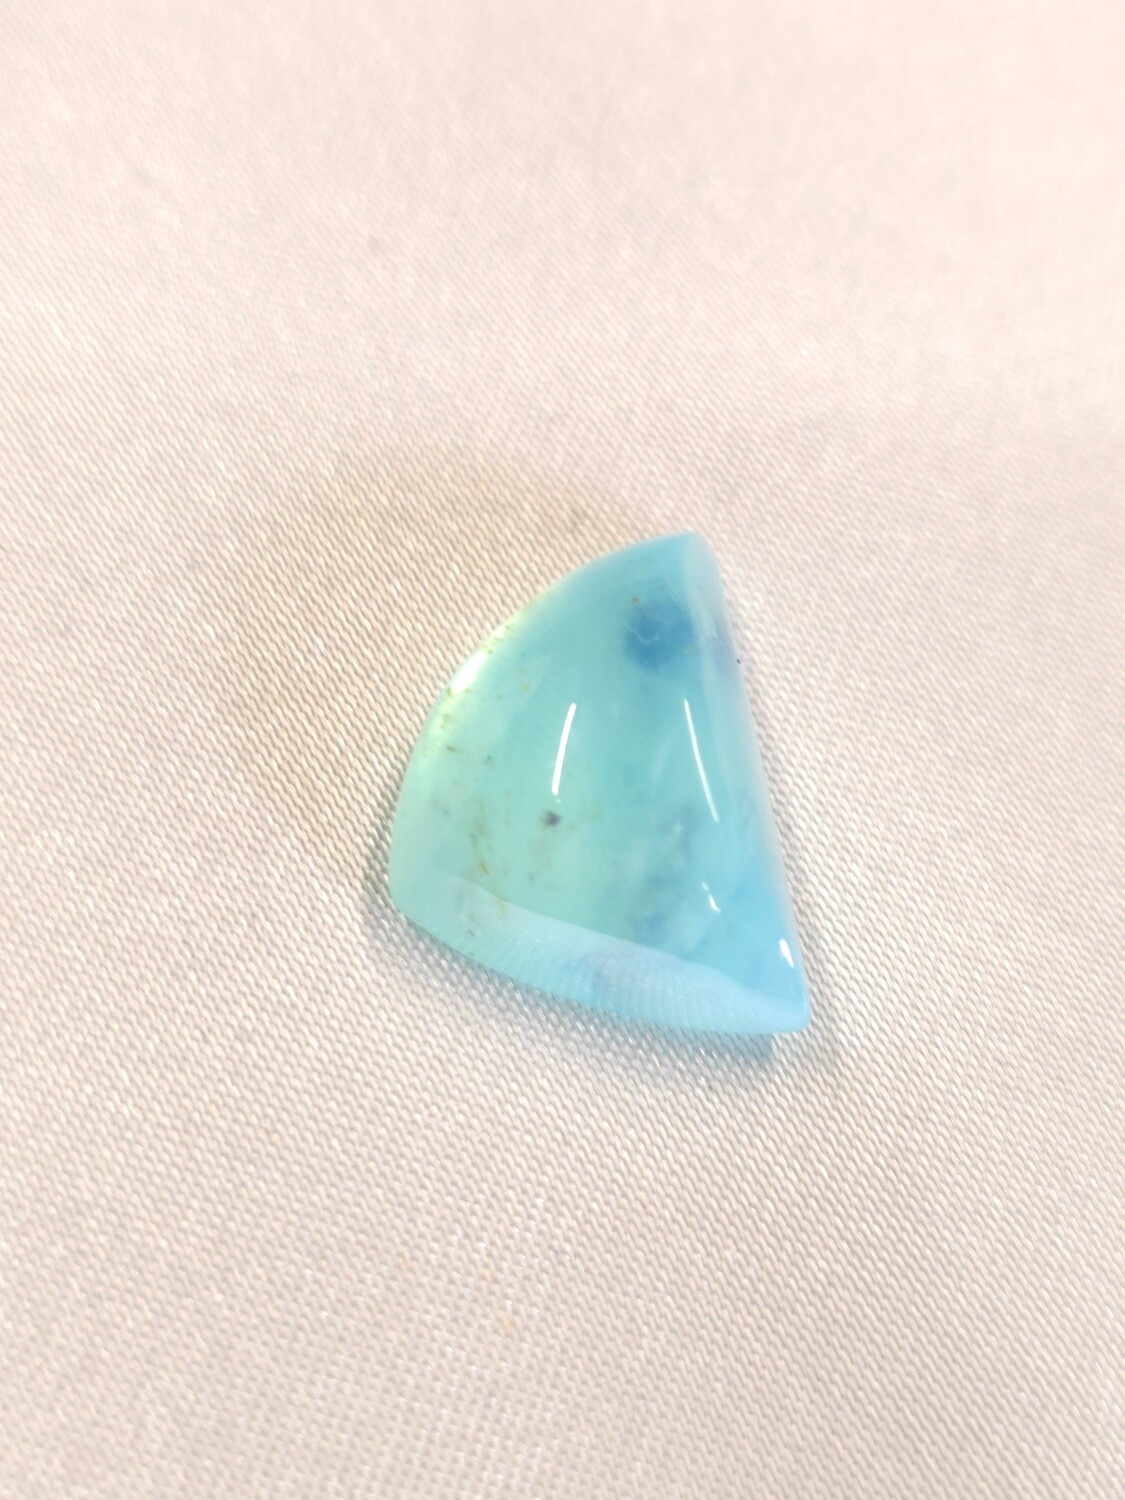 Peruvian Opal